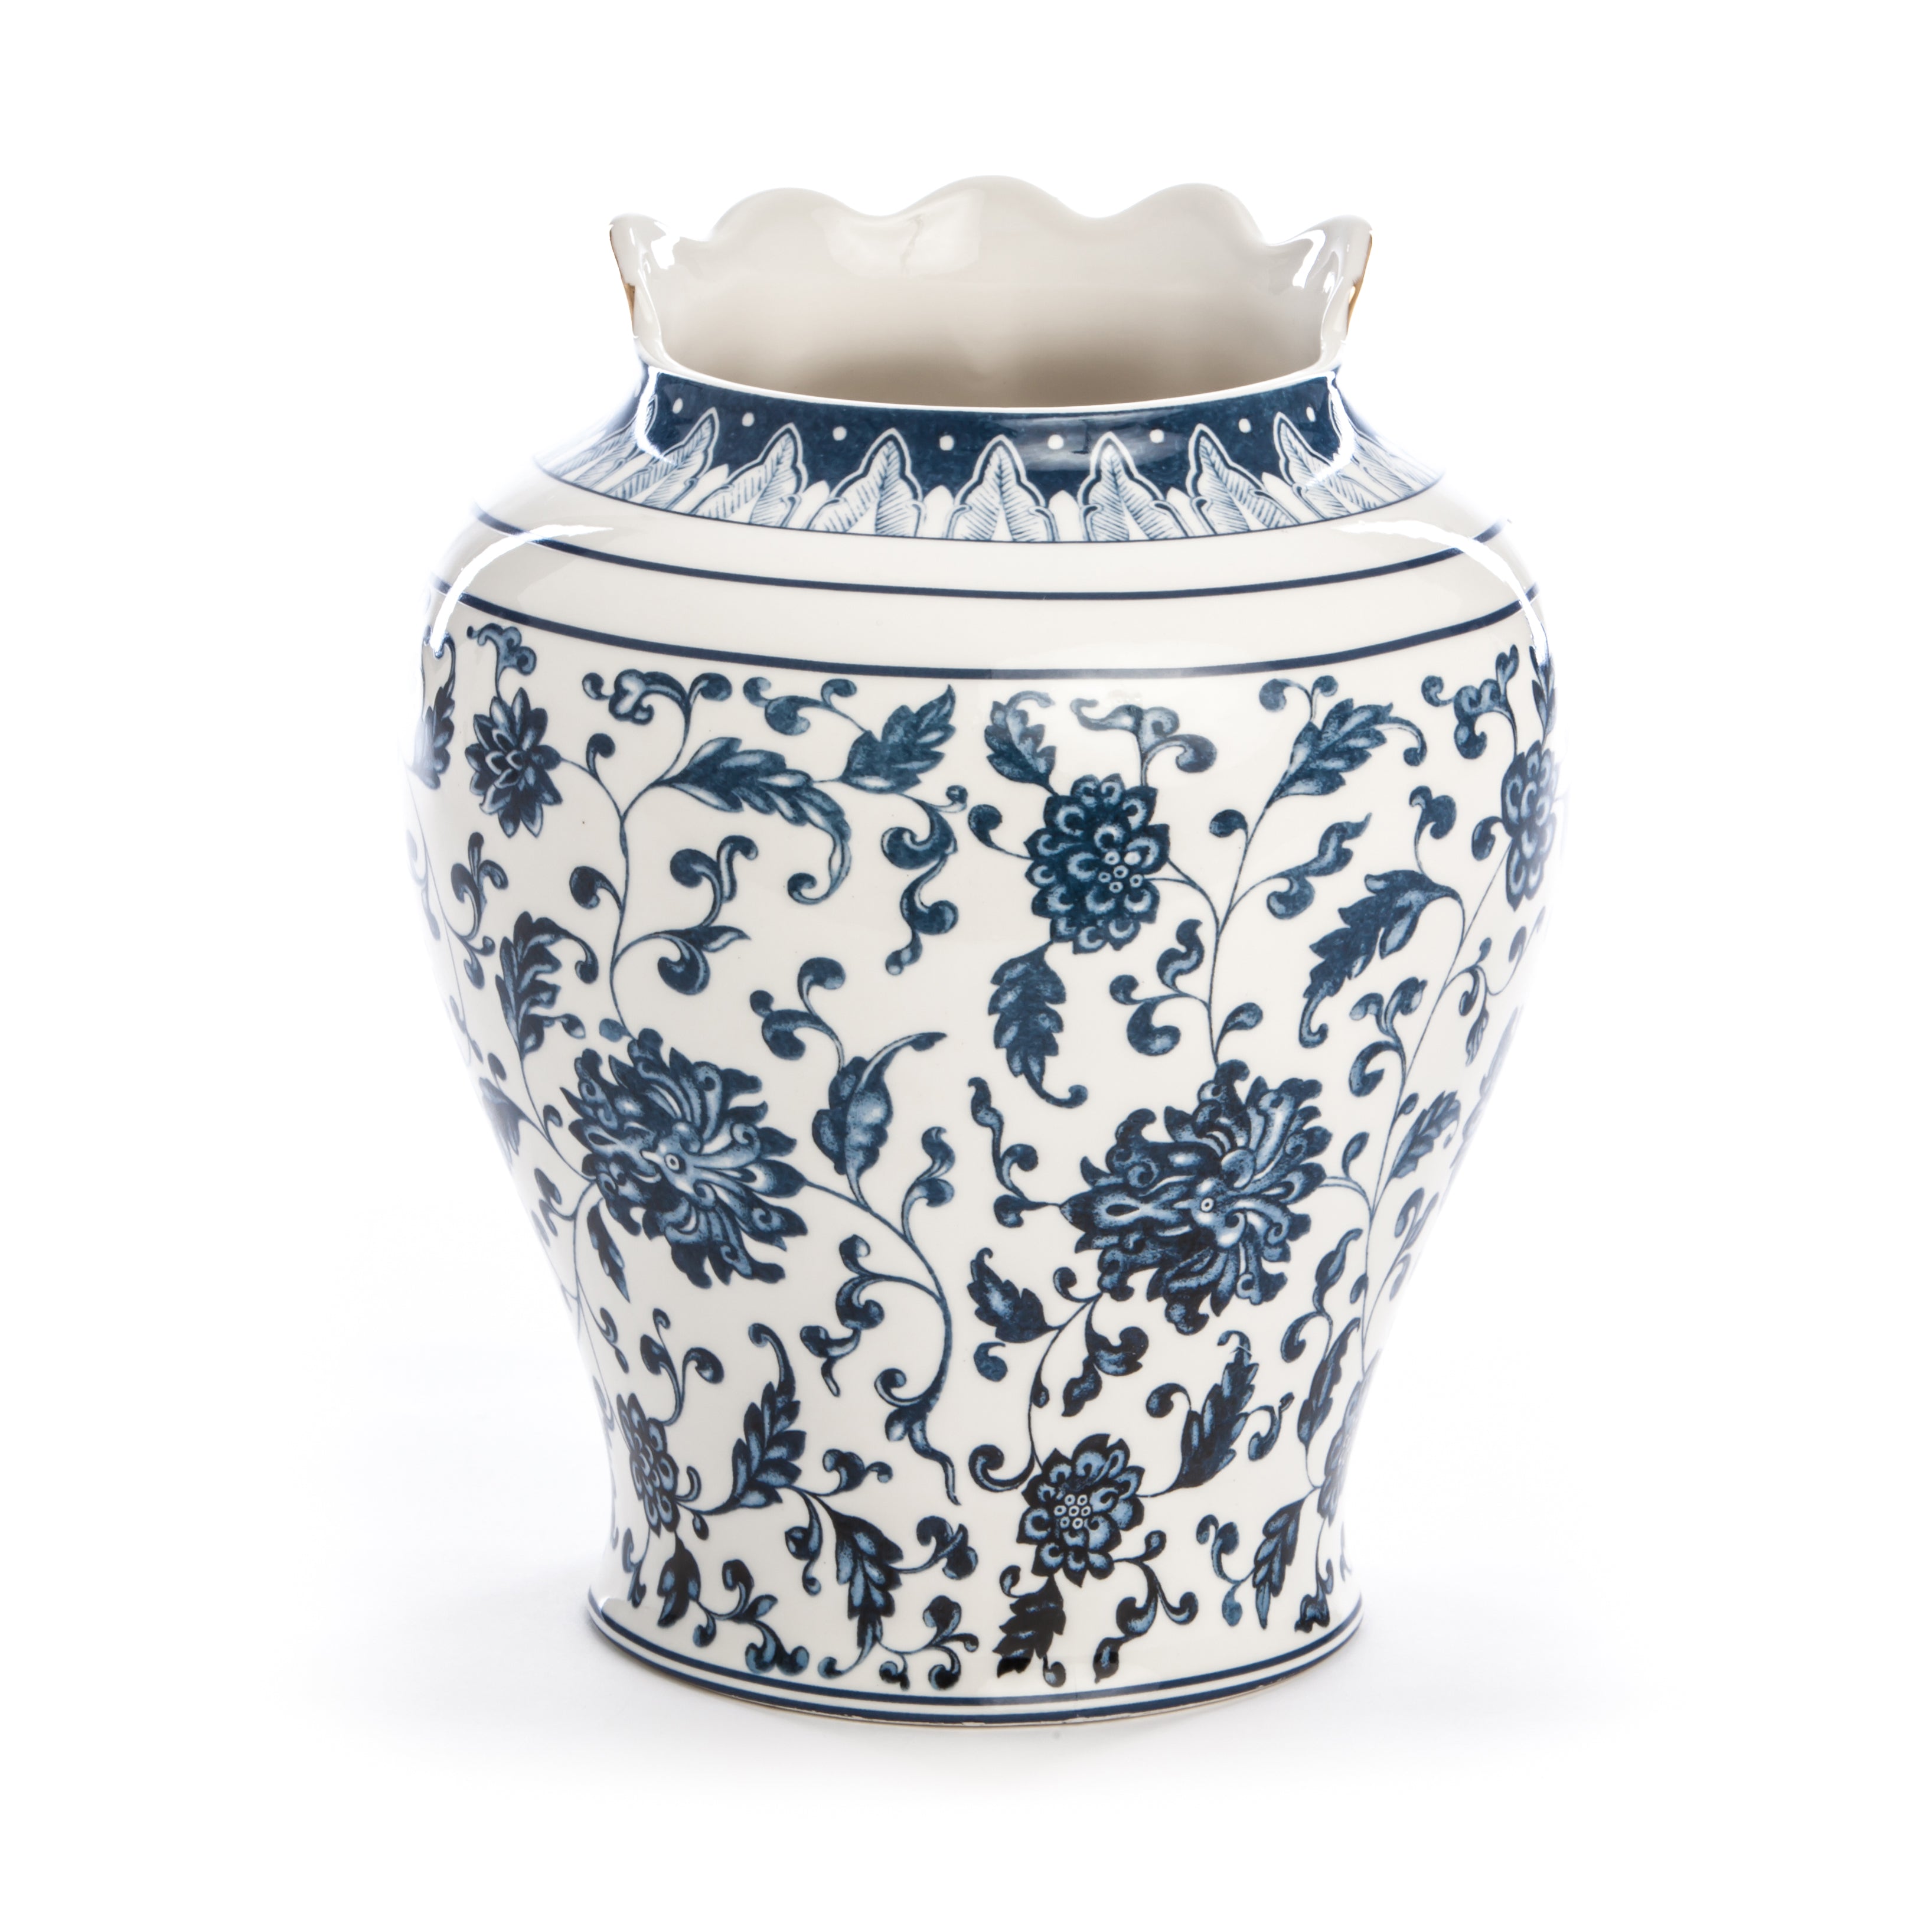 Seletti Hybrid Melania Porcelain vase